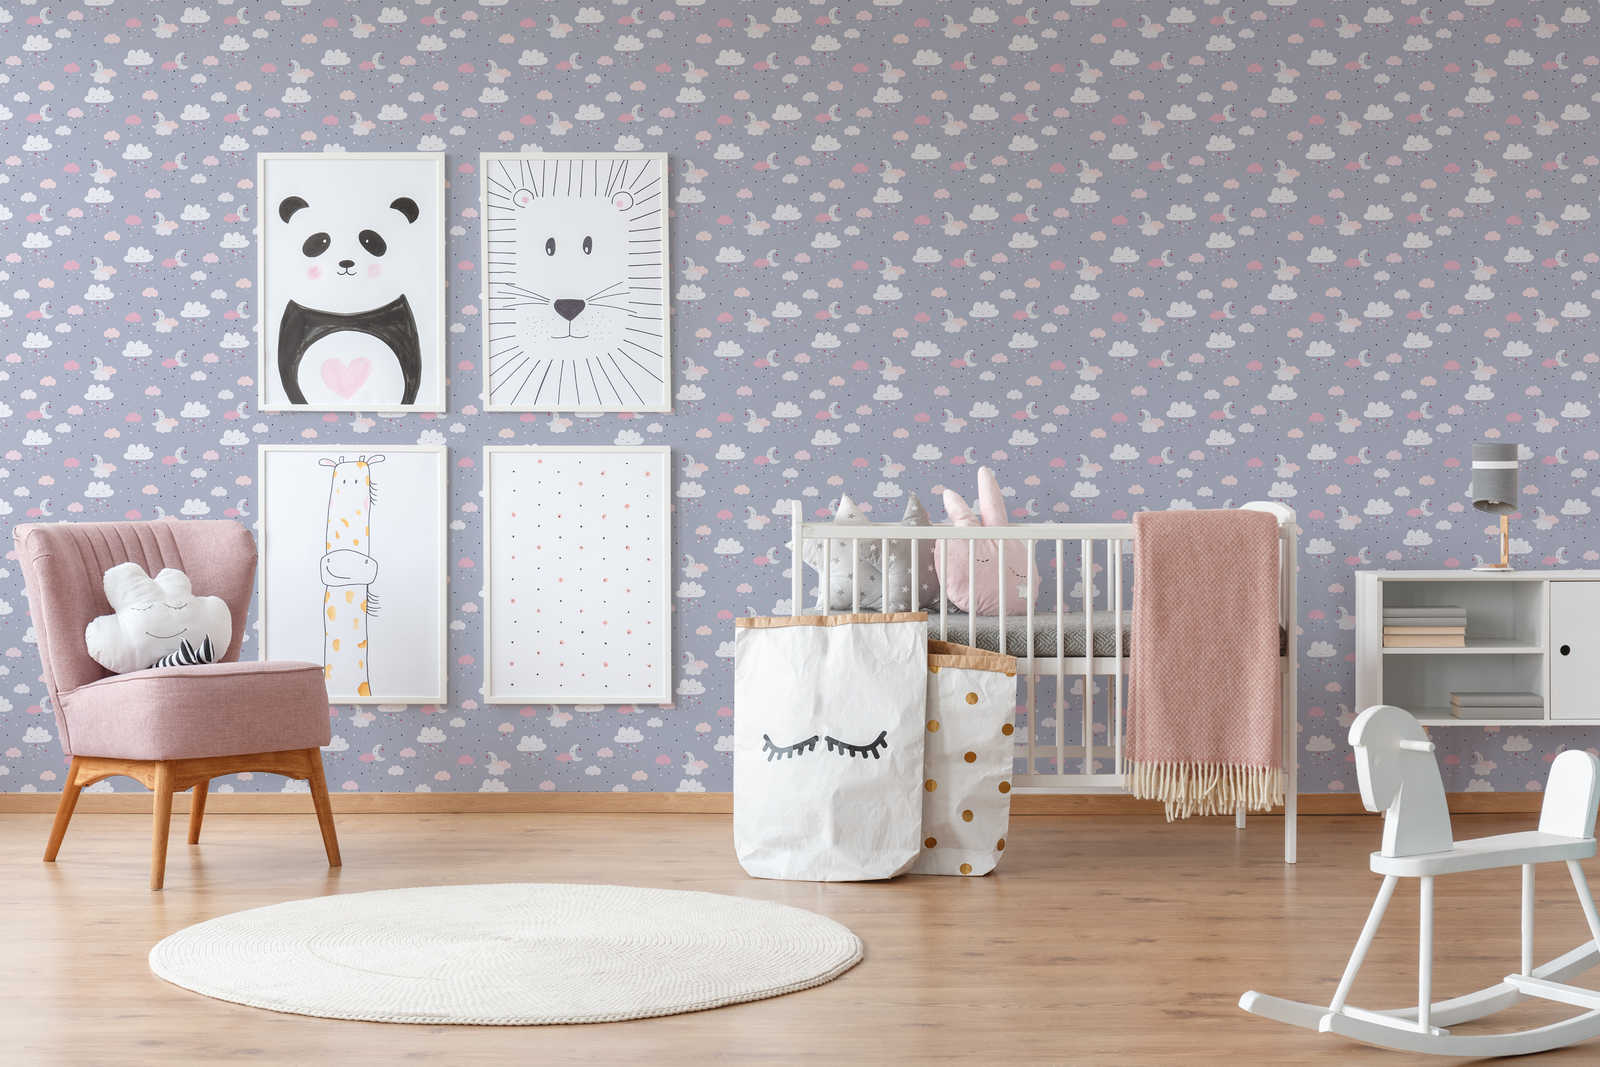             Papel pintado de habitación infantil niñas cielo nocturno - gris, rosa, beige
        